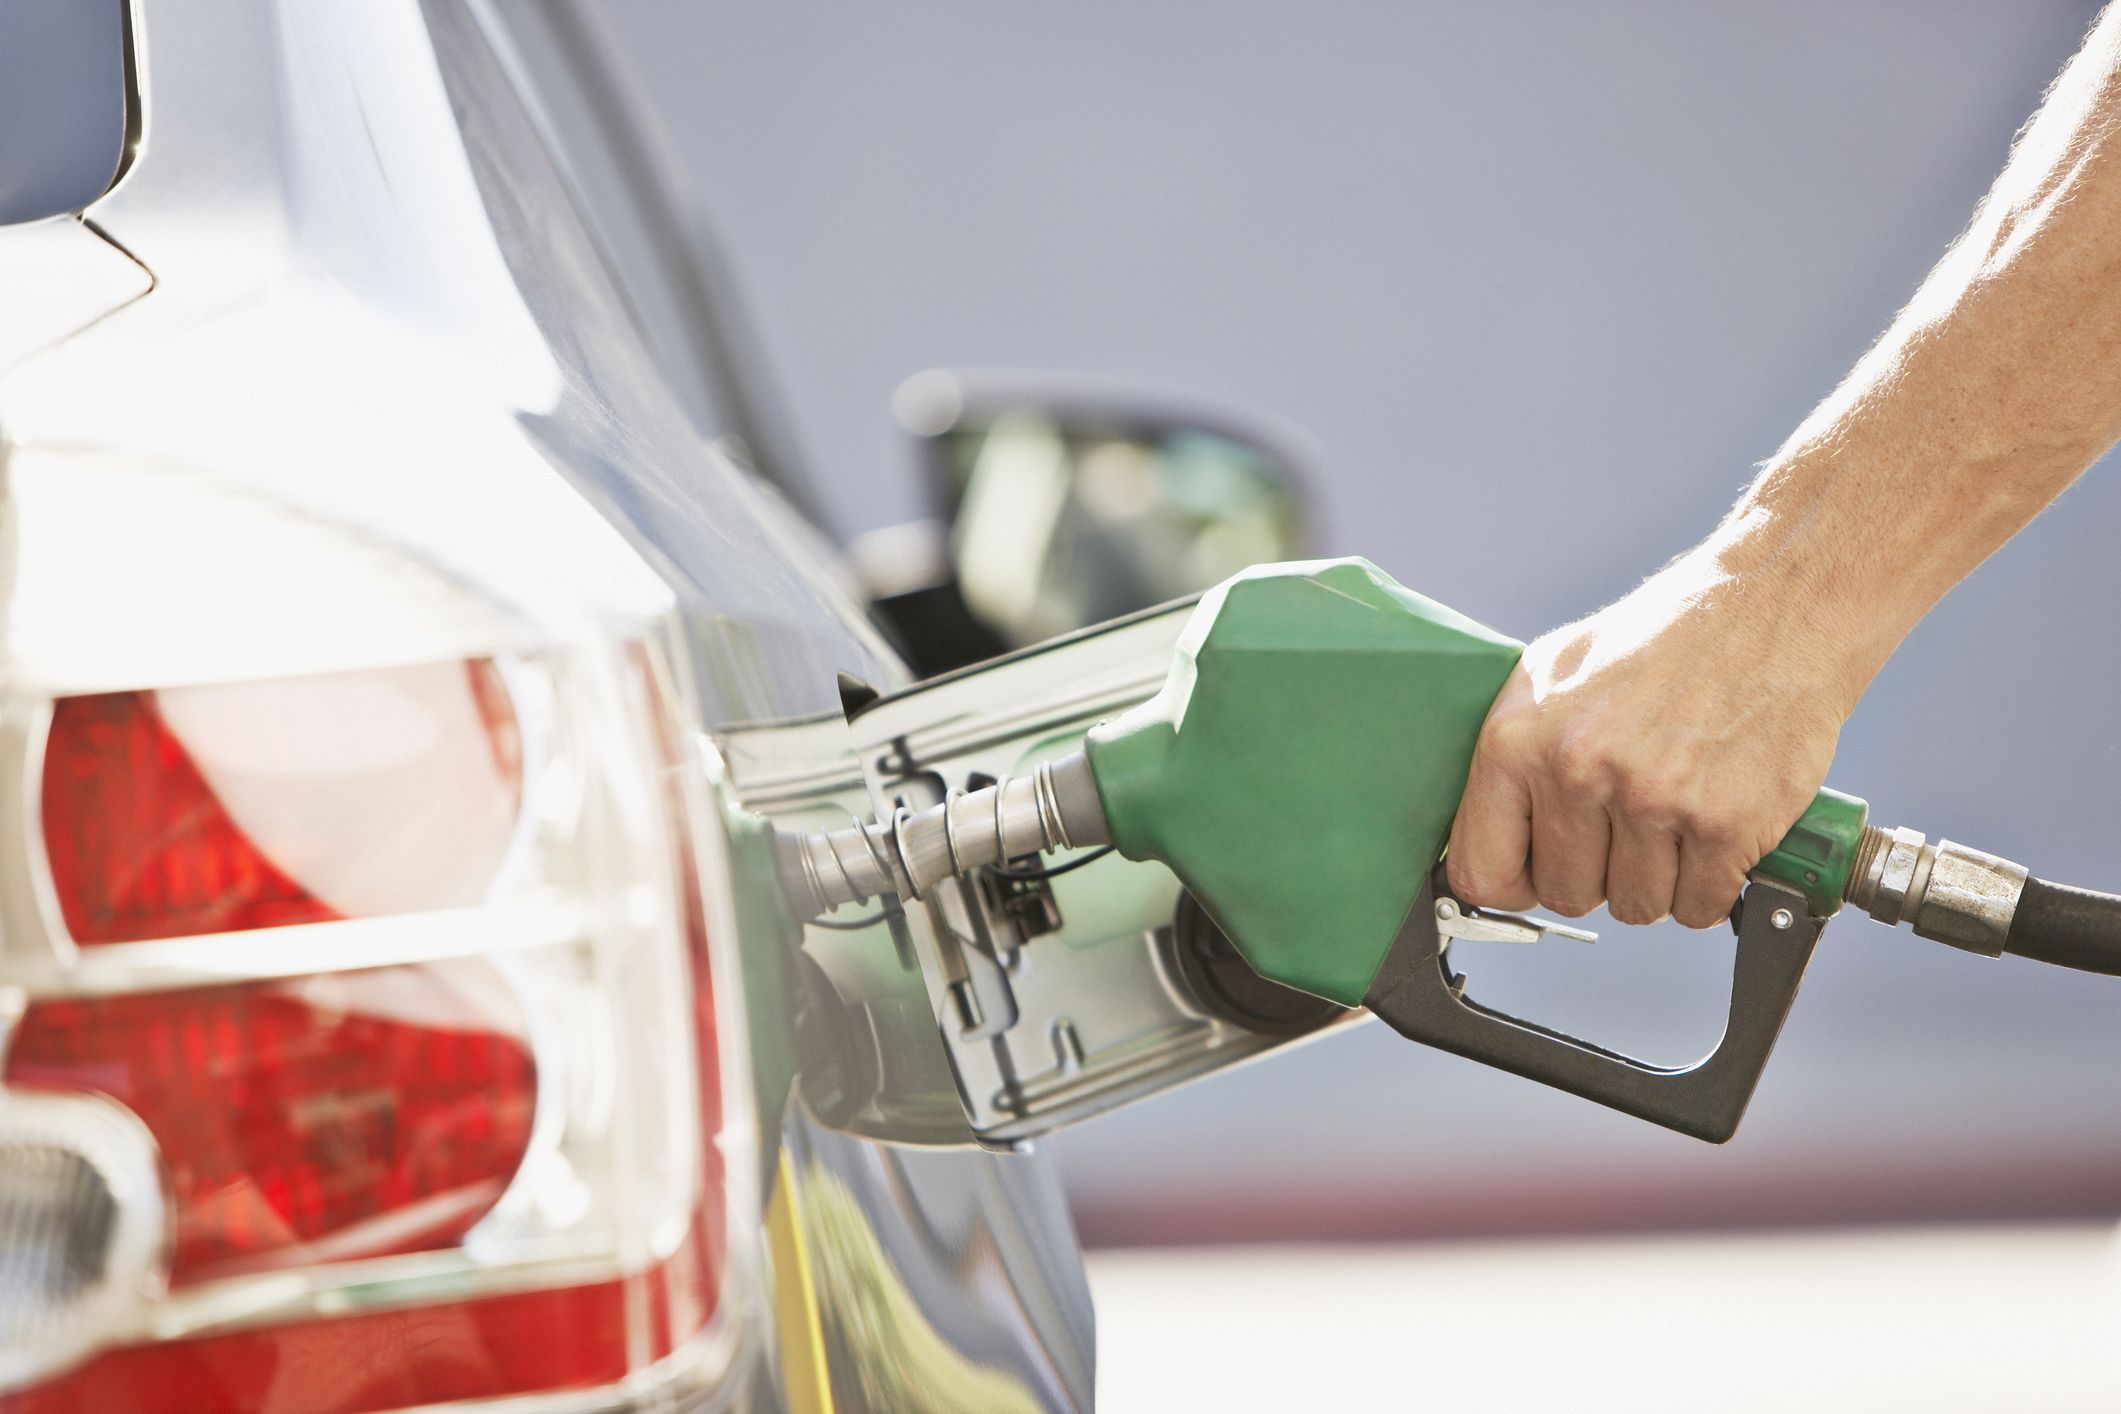  Sulu etanolun orta qiyməti 5,08% artaraq 3,74 R$-dan 3,93 R$-a qədər yüksəlir.